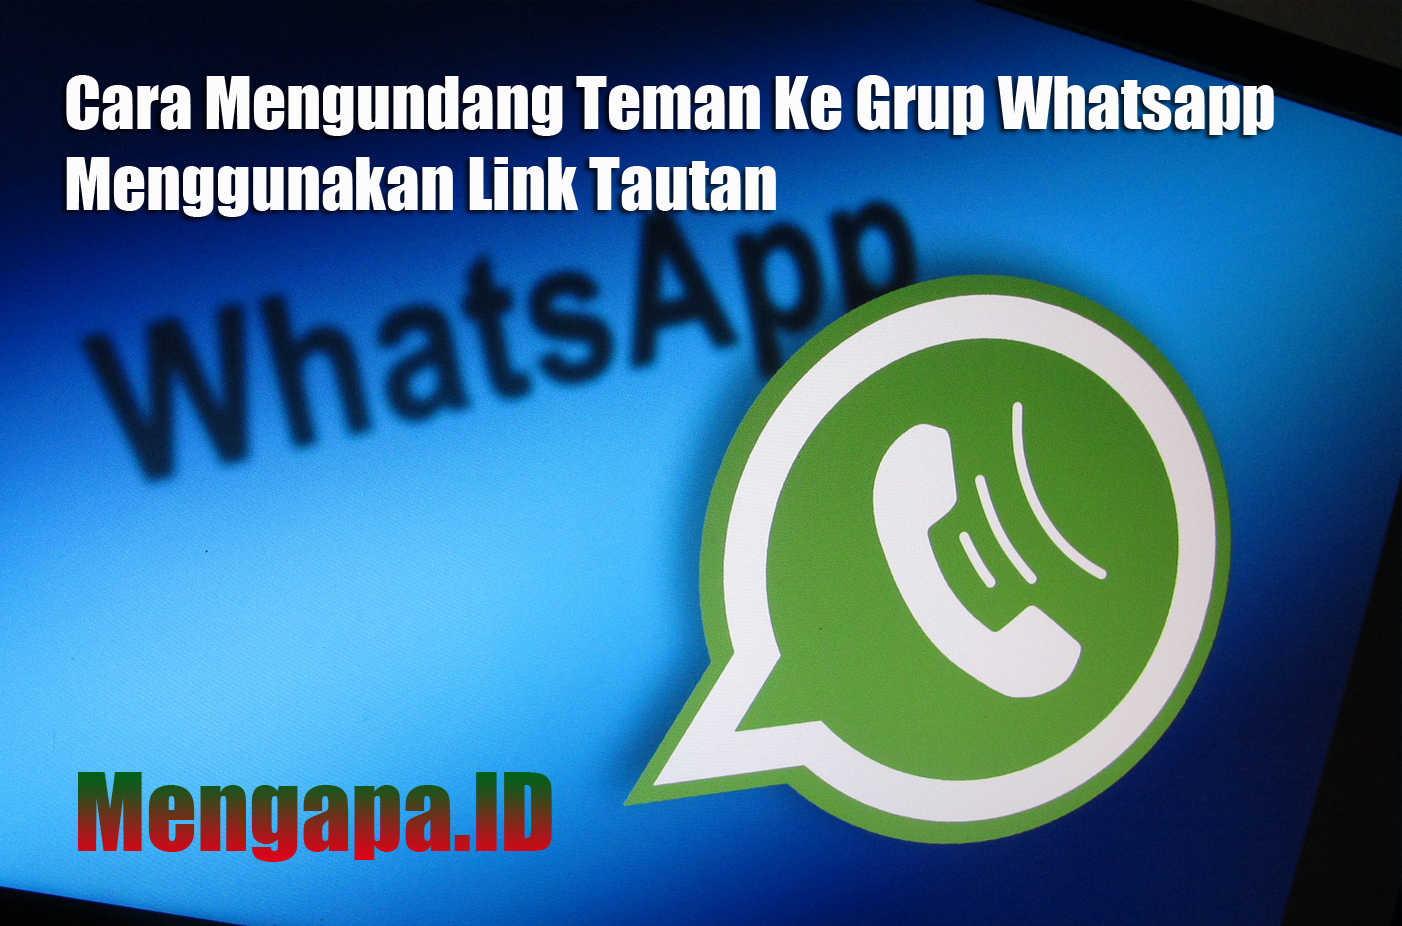 Cara Mengundang Teman Ke Grup Whatsapp Menggunakan Link Tautan